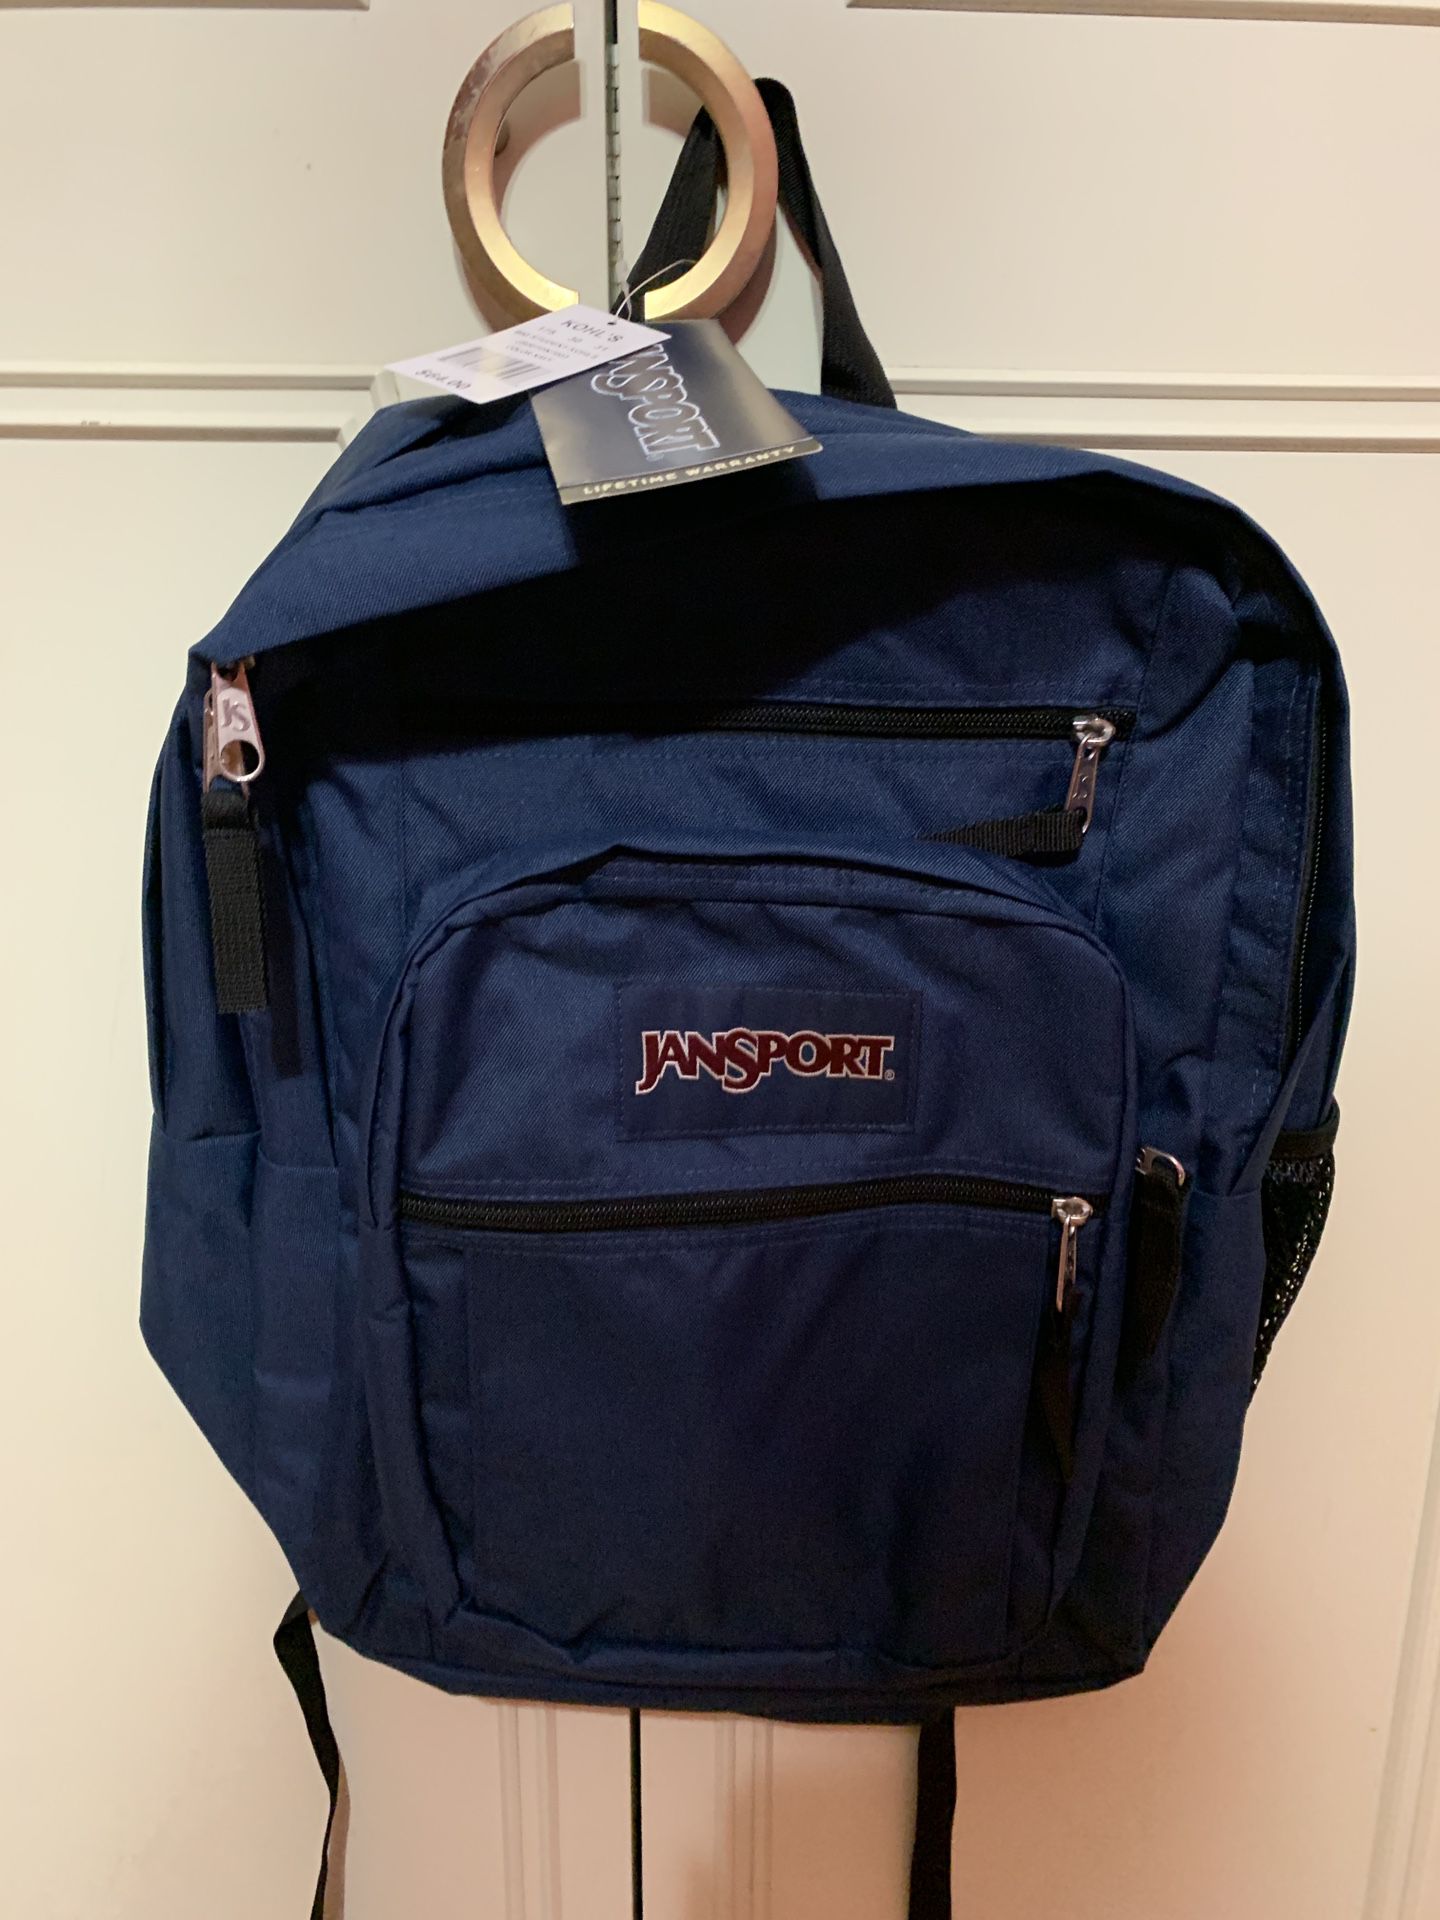 Jansport backpack navy